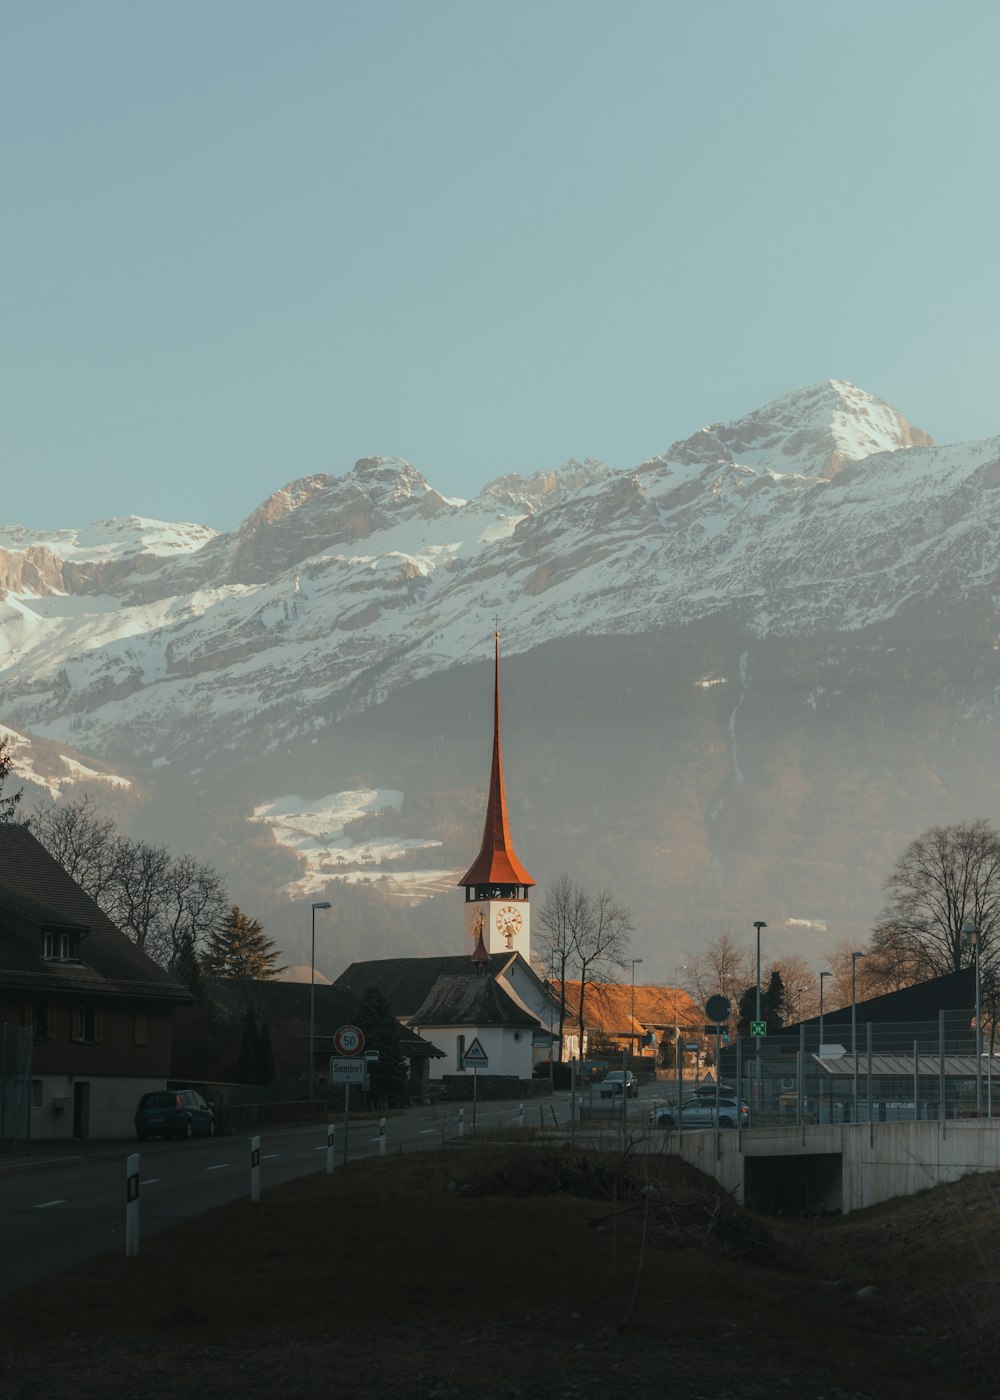 눈 덮인 산 앞에 첨탑이있는 교회